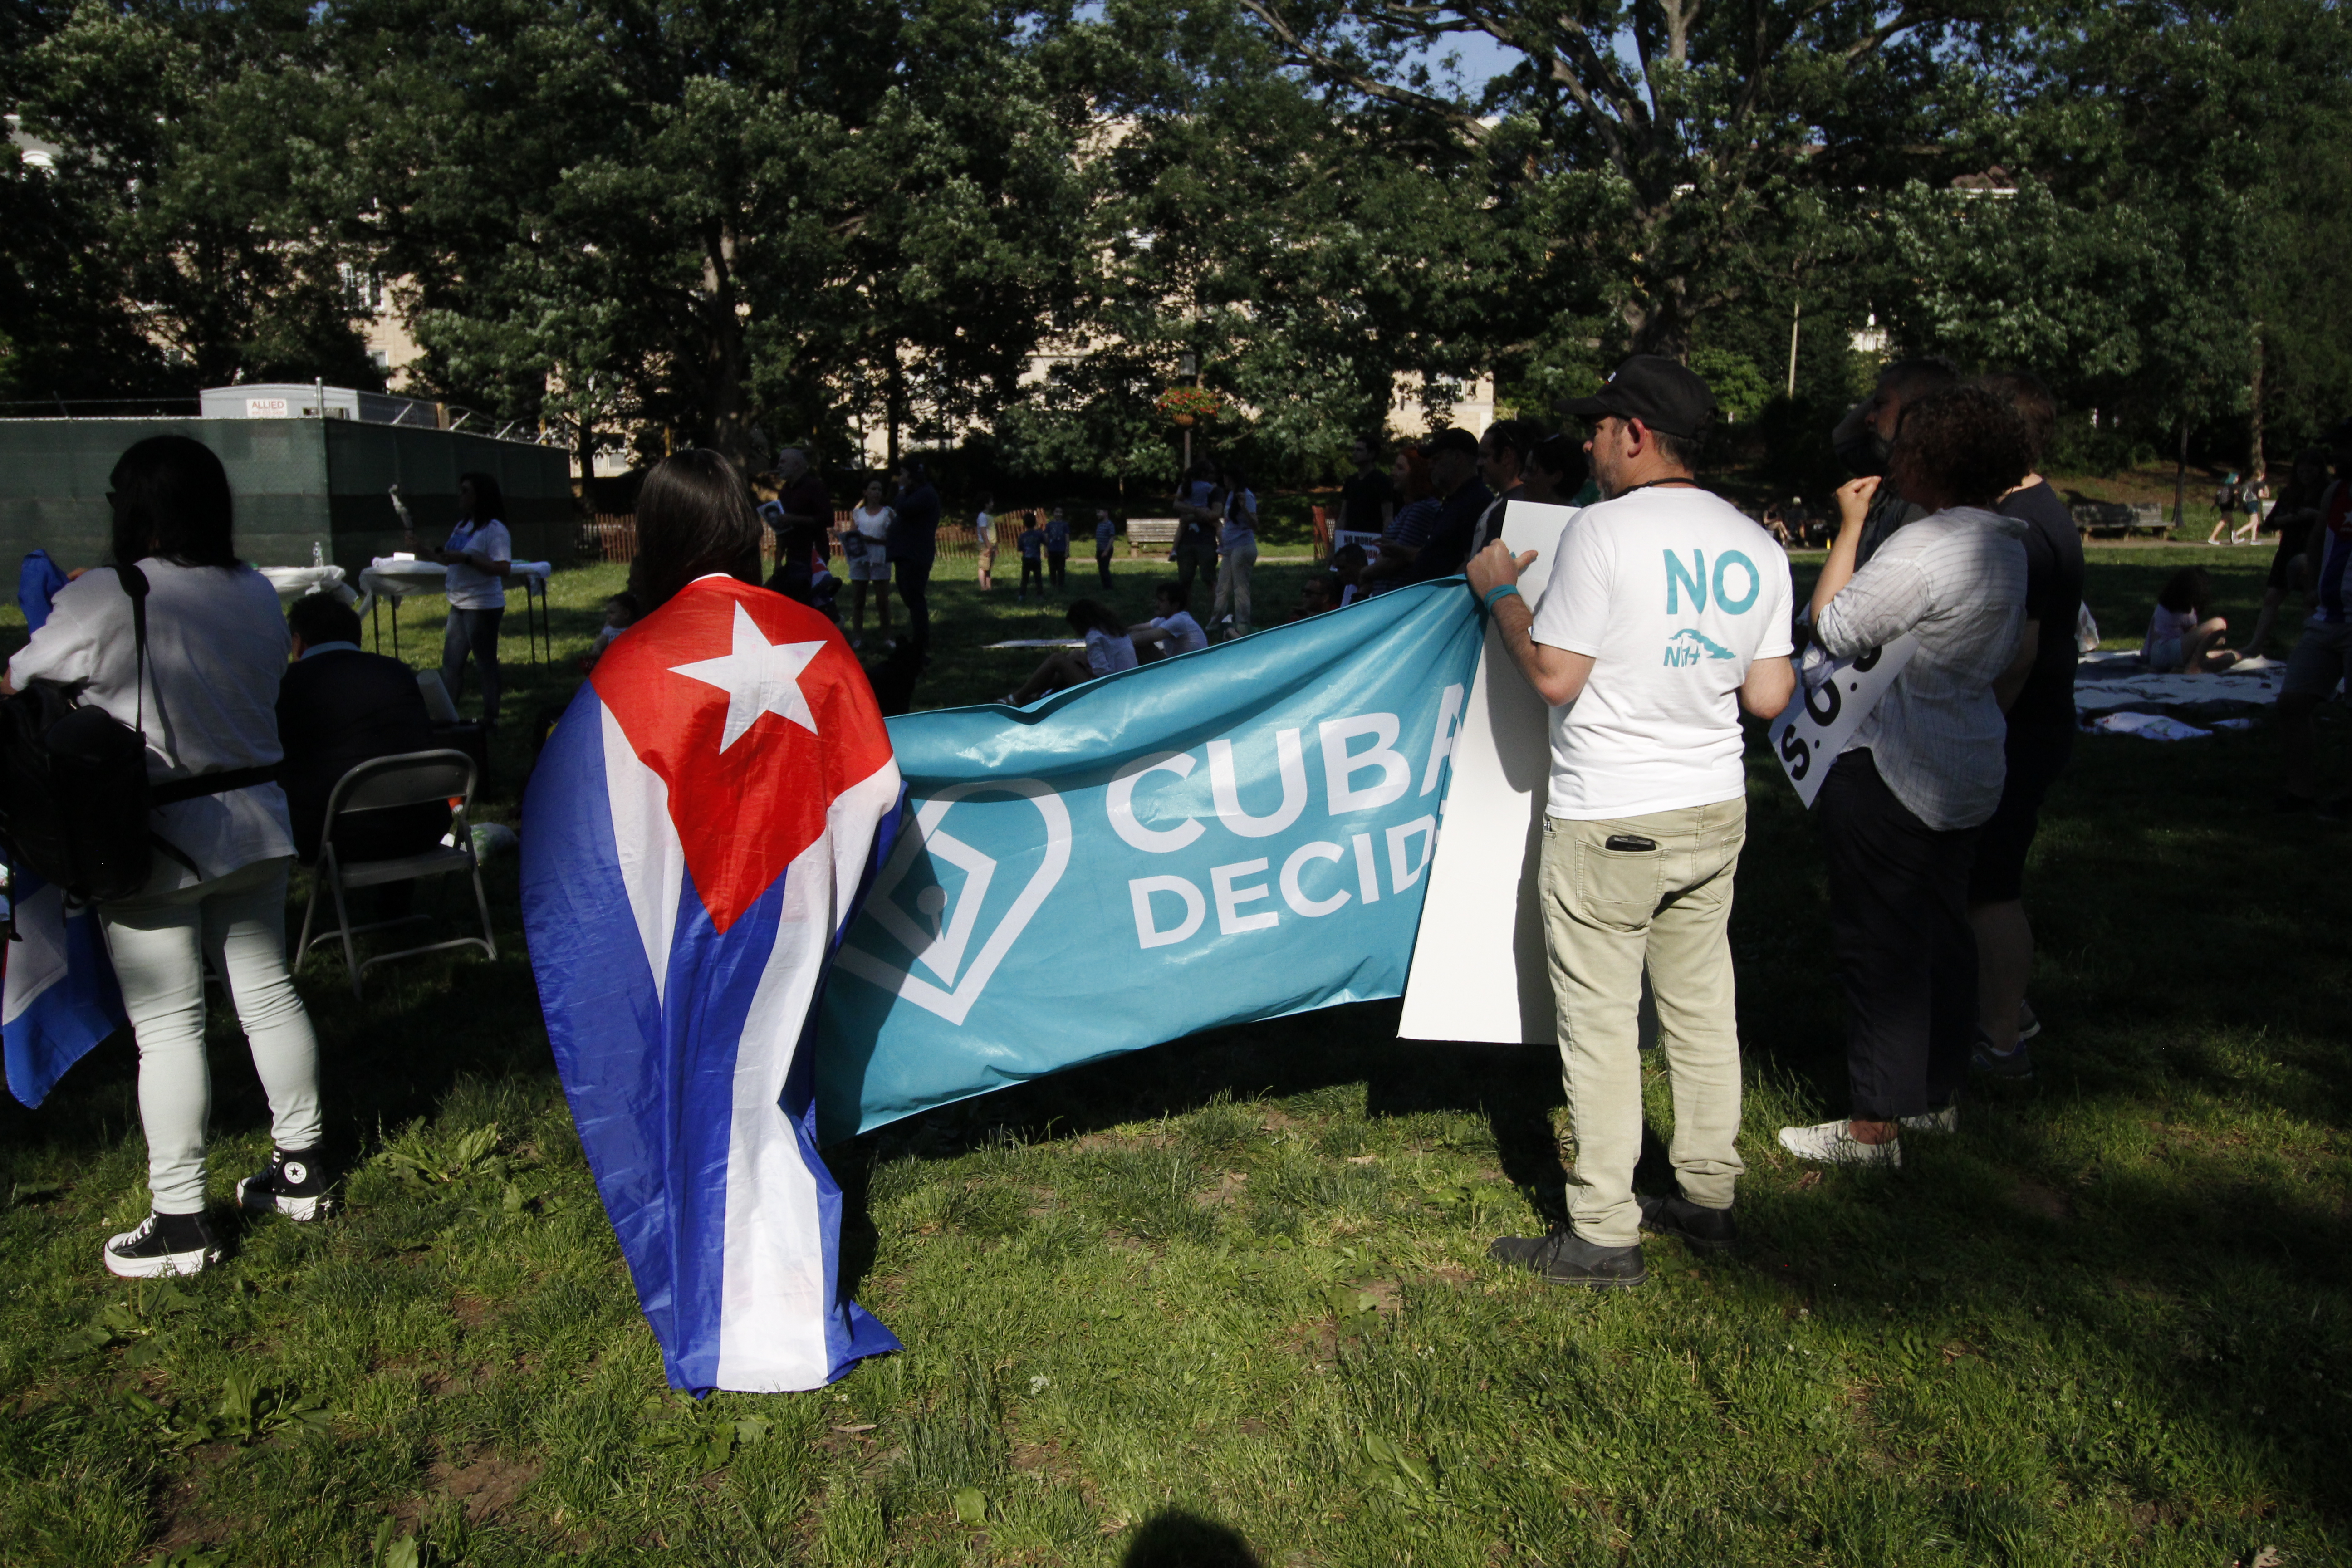 Cuba libre, cubanos se unen en defensa de los presos politicos en cuba